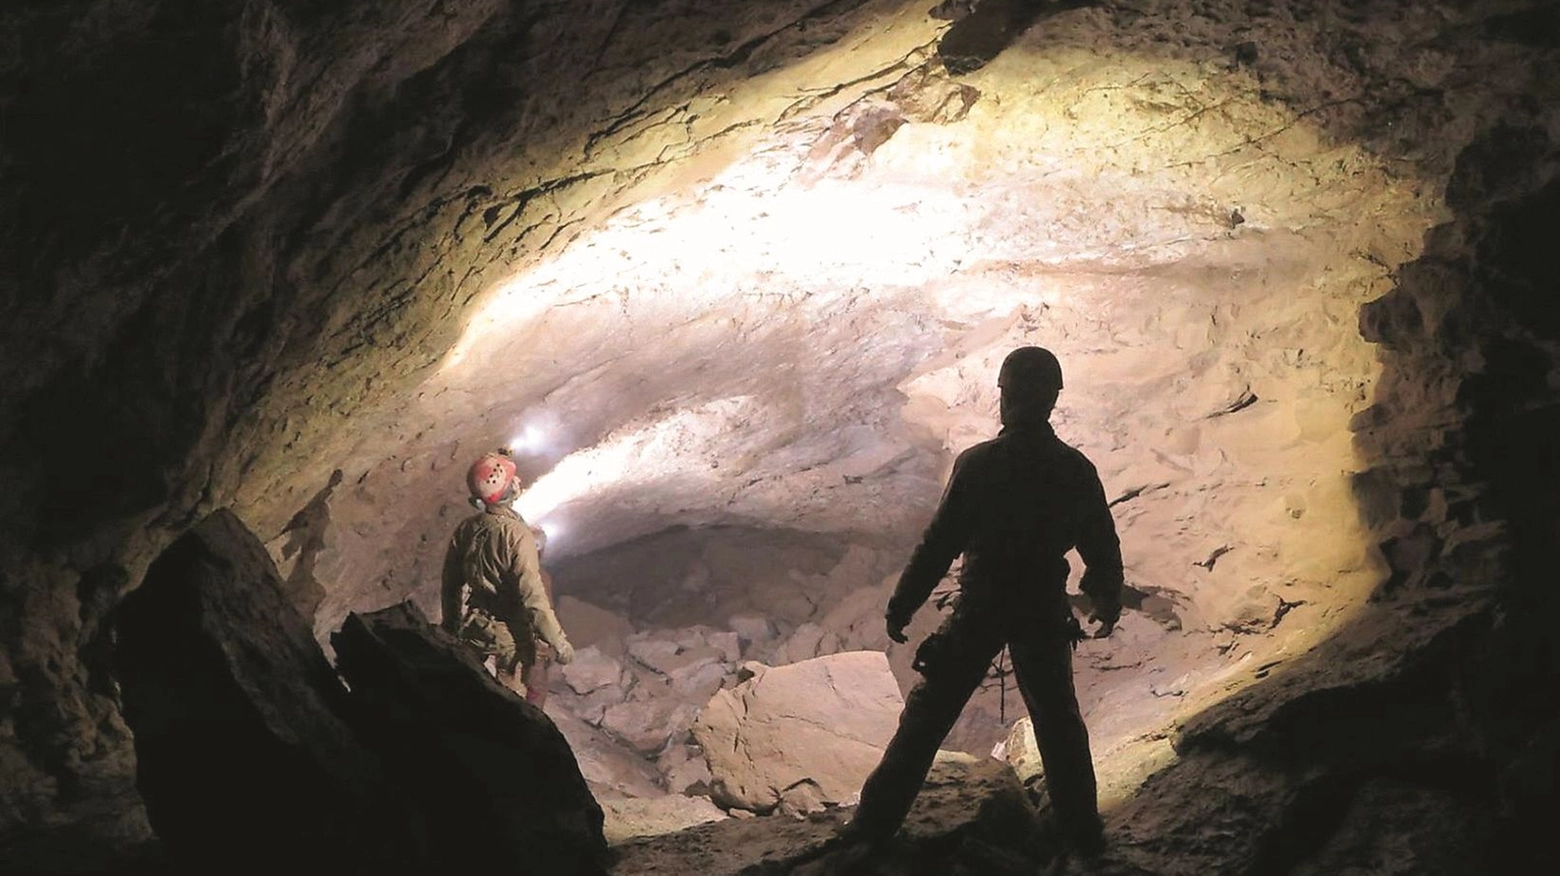 Una delle immagini catturate dentro la grotta Viva le Donne nella Grigna settentrionale